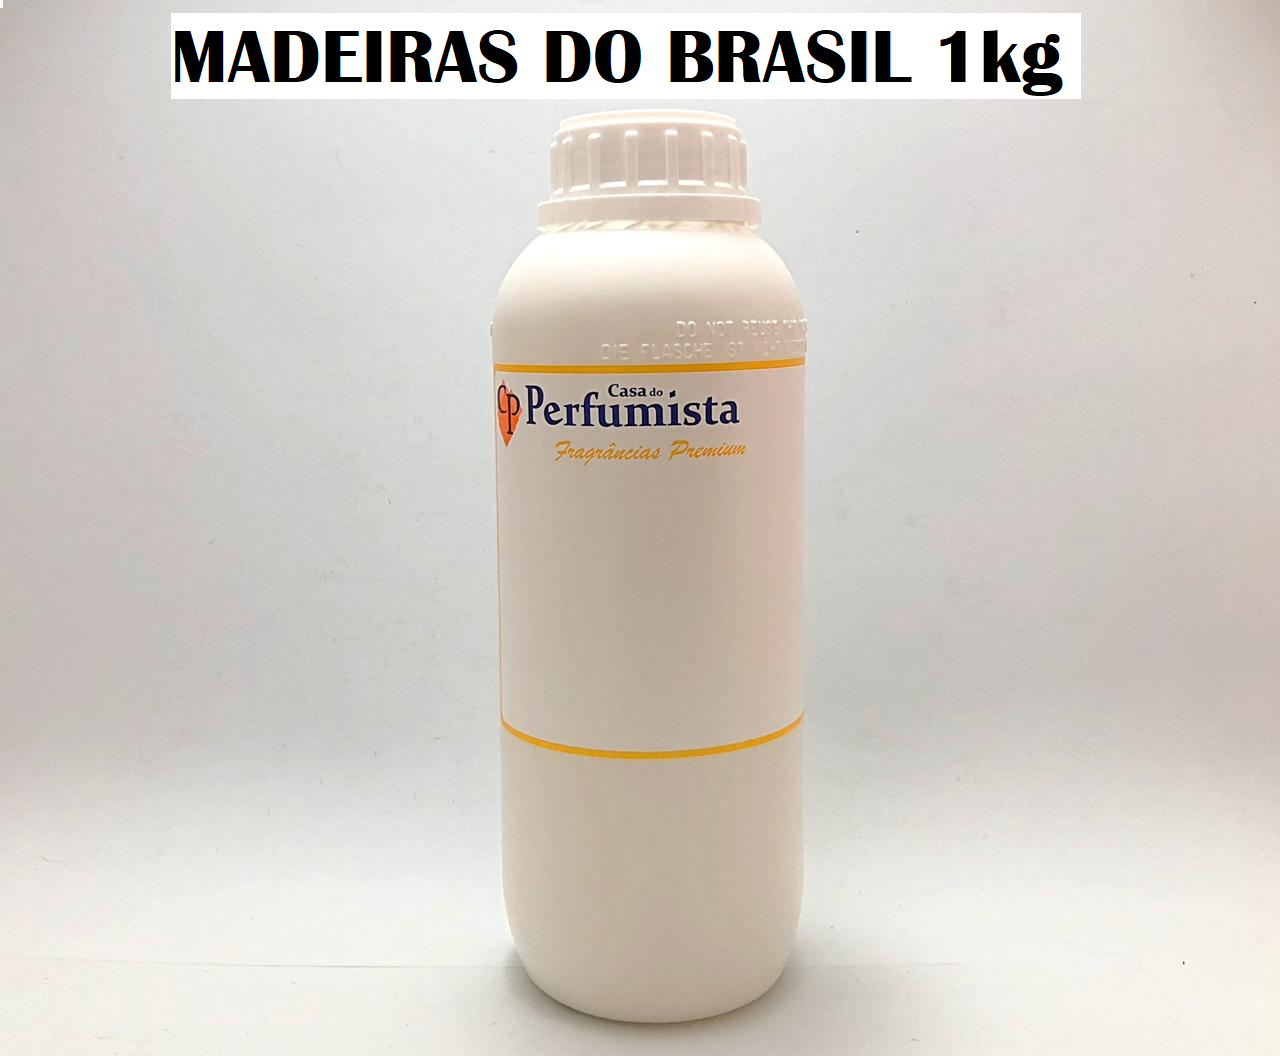 MADEIRAS DO BRASIL - 1kg